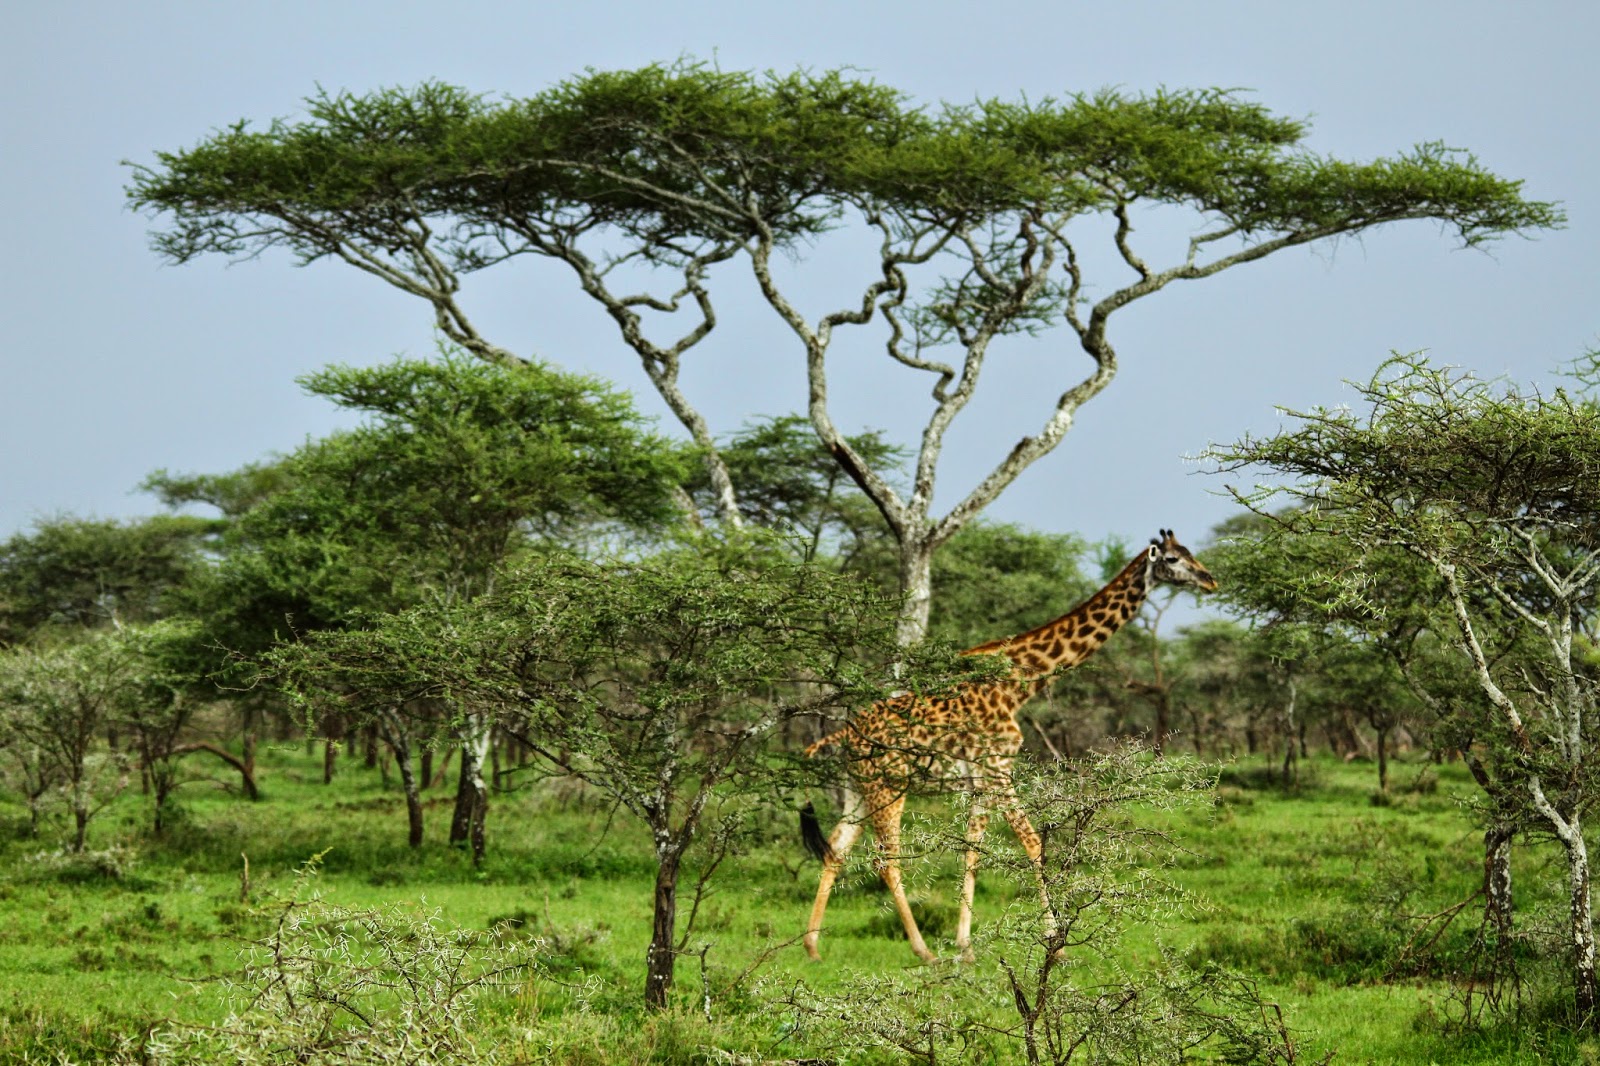 Ver GIRAFAS NO SERENGETI e testemunhar as maravilhas estes animais encantadores | Tanzânia